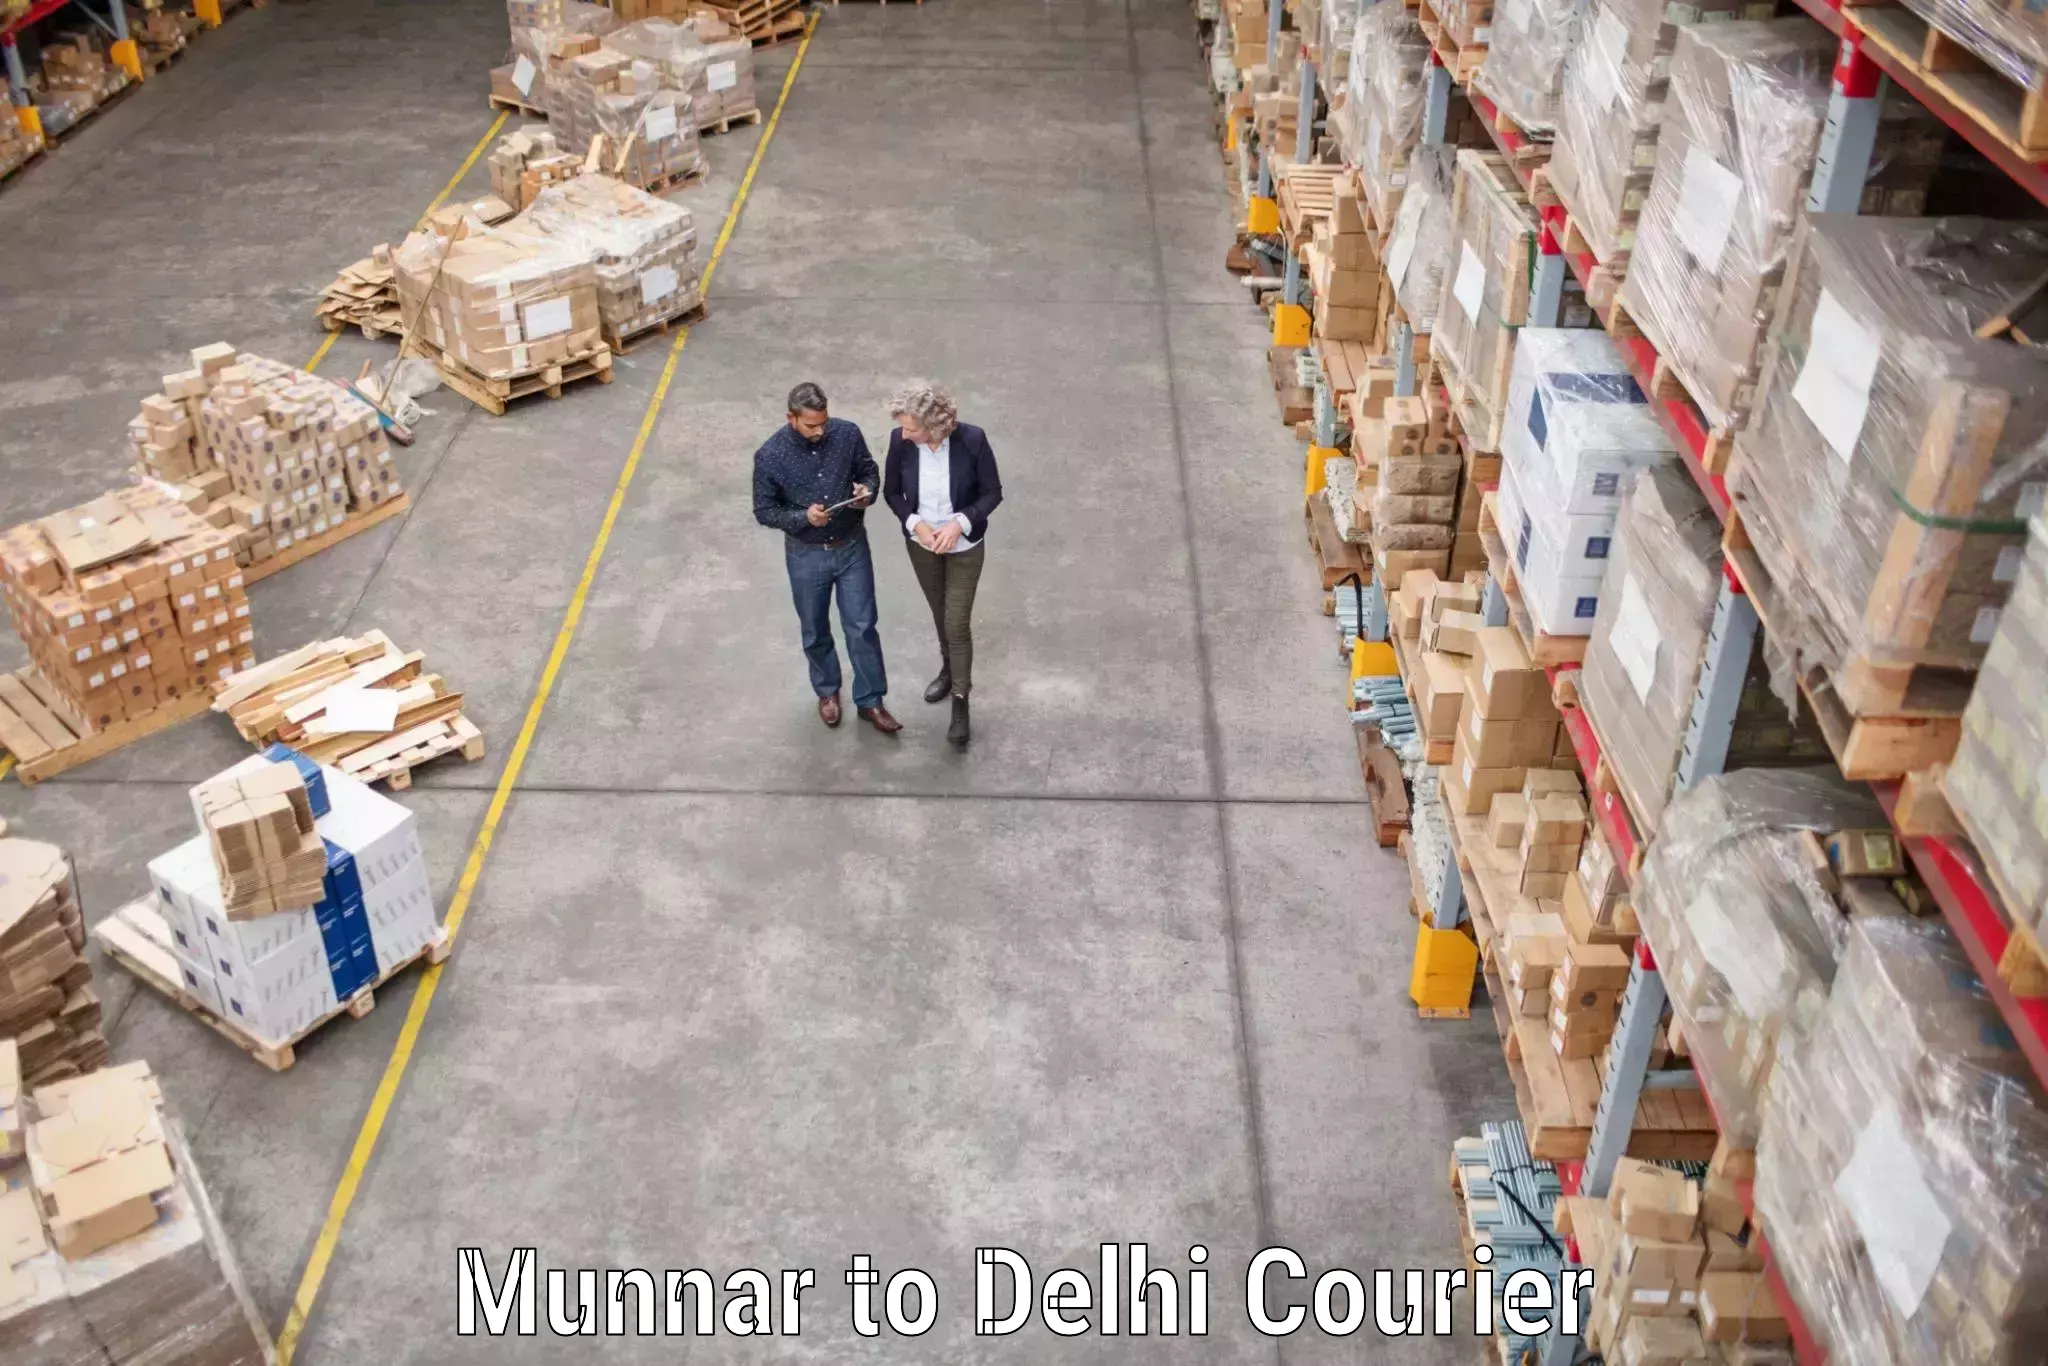 Furniture relocation experts Munnar to Delhi